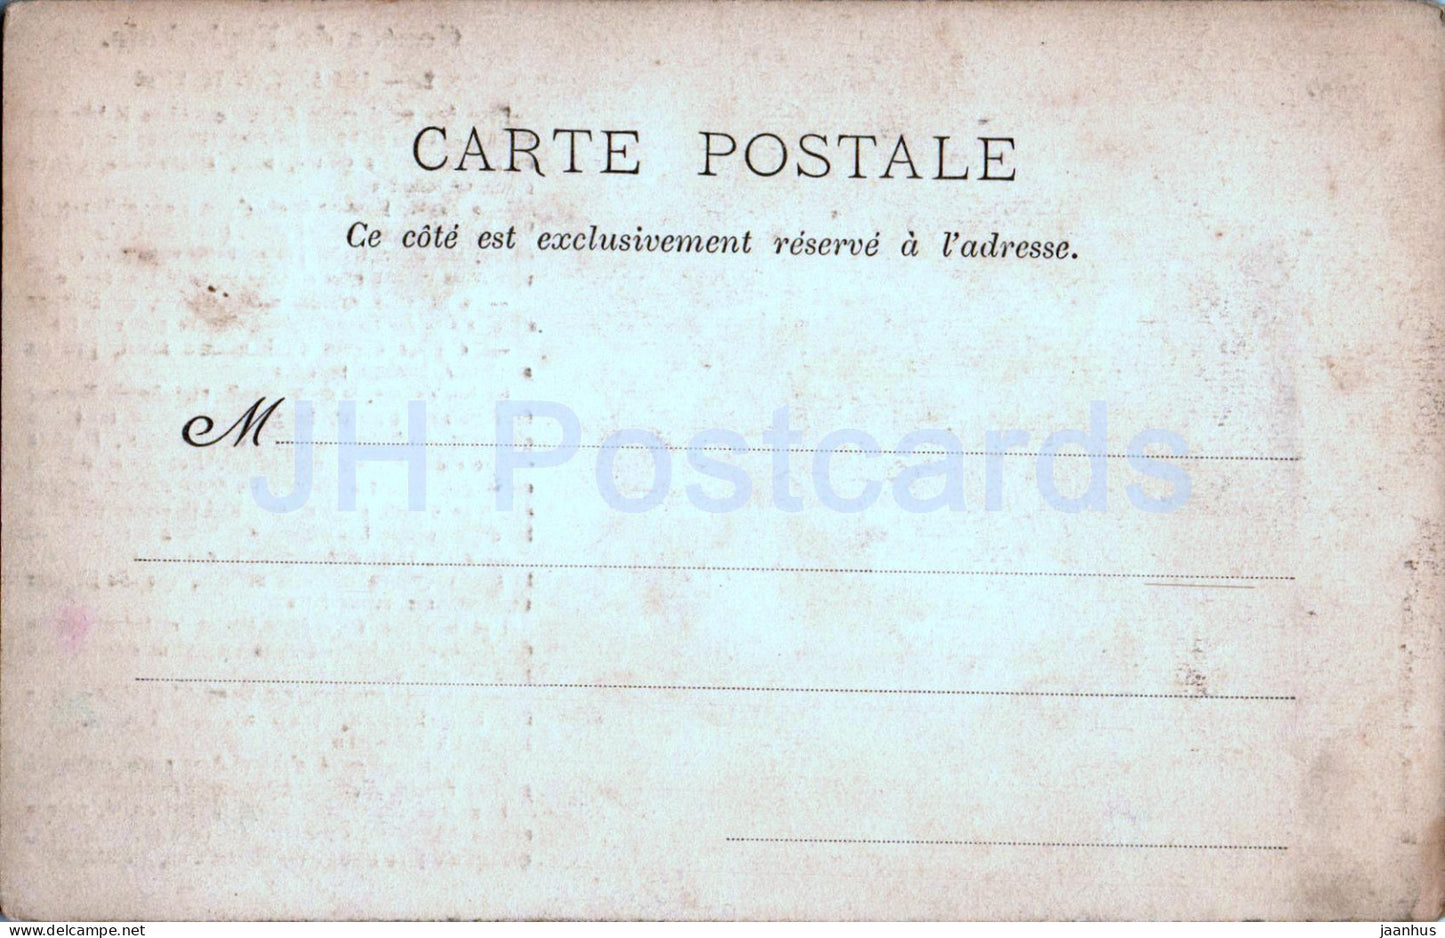 Contes de Fraimbois - Les Apotres Voleurs - 2 - old postcard - France - unused